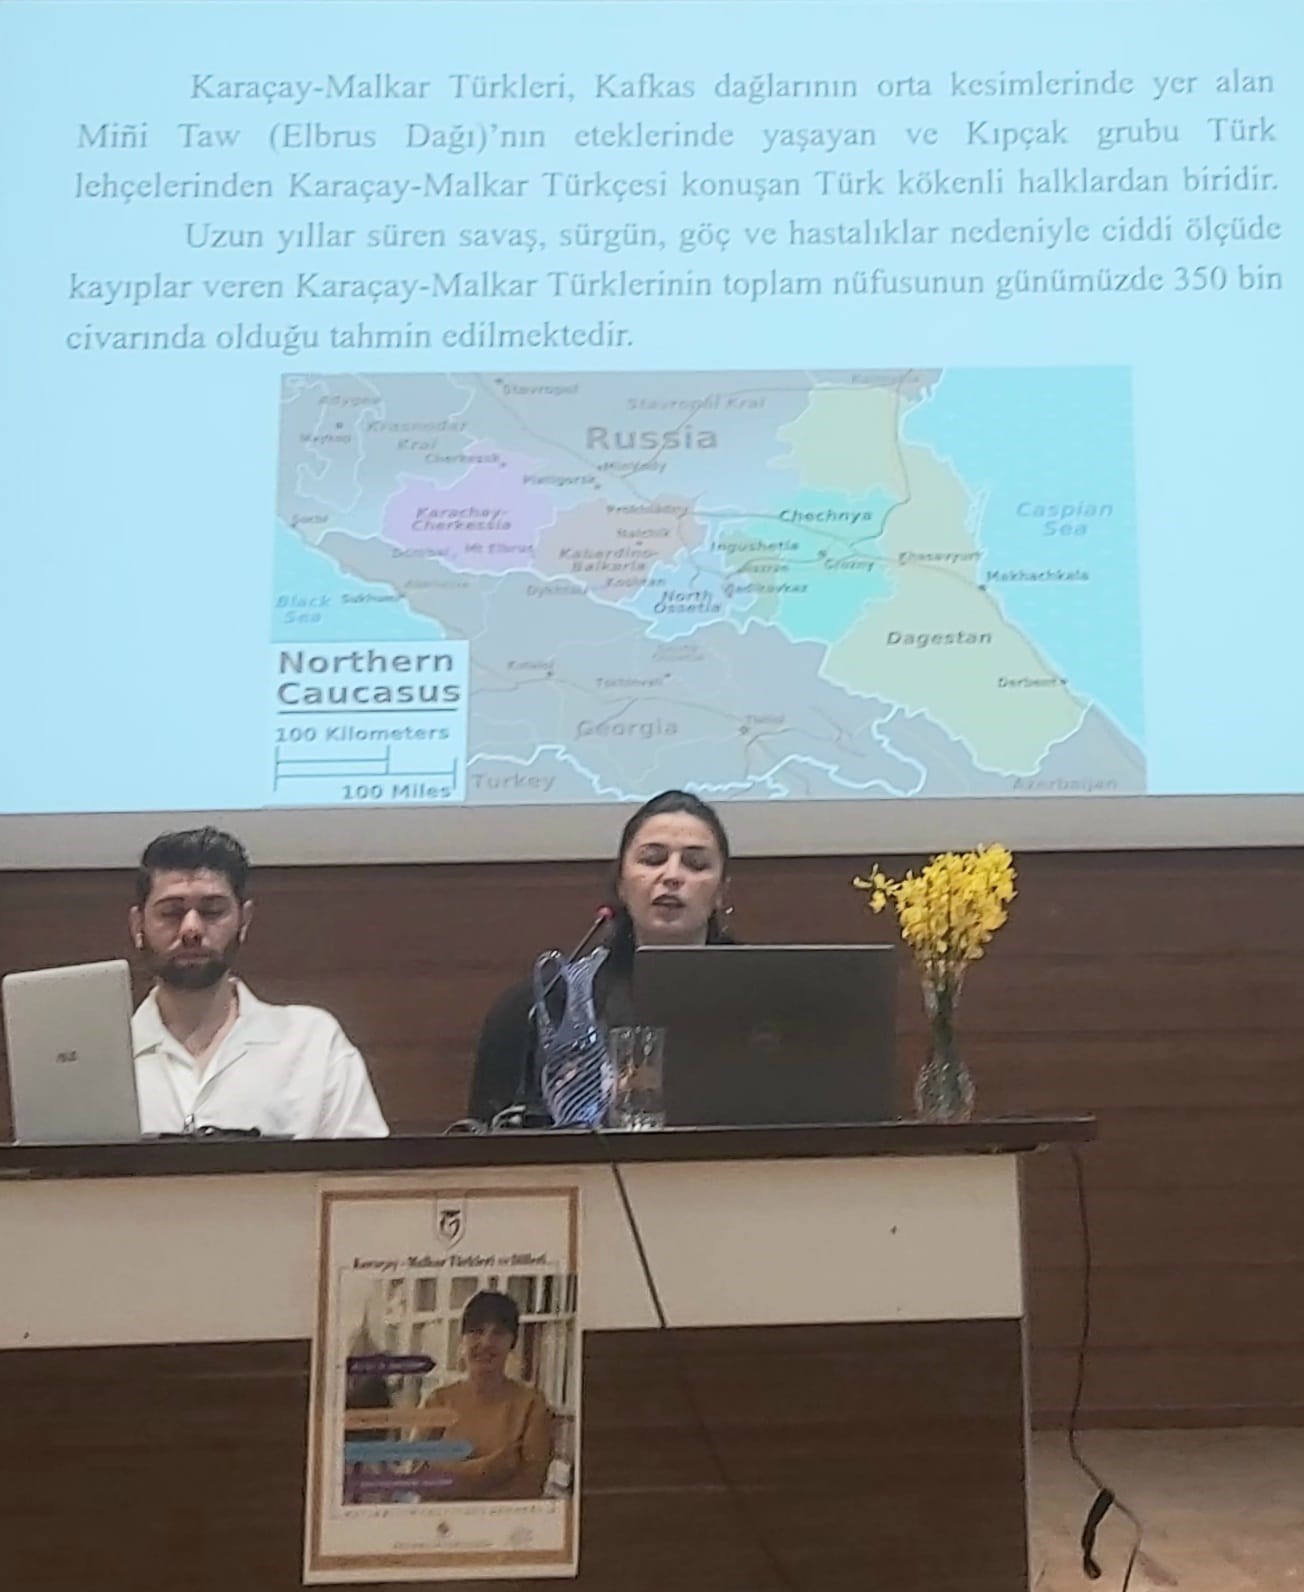 Muğla’da Karaçay-Malkar Türkleri ve Dilleri konuşuldu
